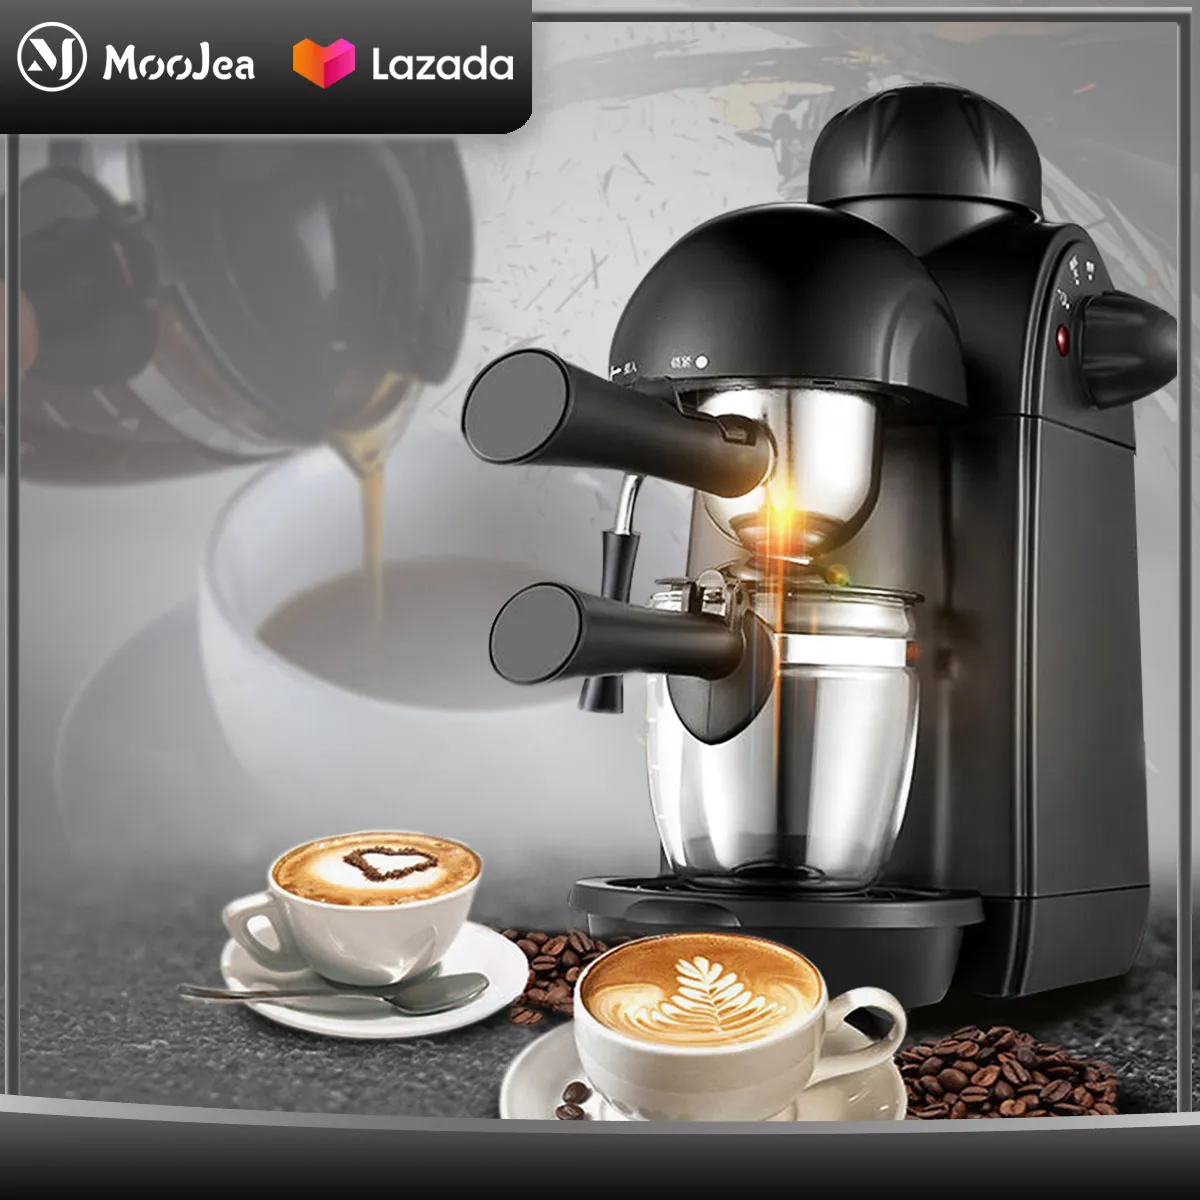 MOOJEA เครื่องชงกาแฟ เครื่องชงกาแฟสด เครื่องทำกาแฟ เครื่องเตรียมกาแฟ อเนกประสงค์ เครื่องชงกาแฟอัตโนมัติ Fresh coffee maker